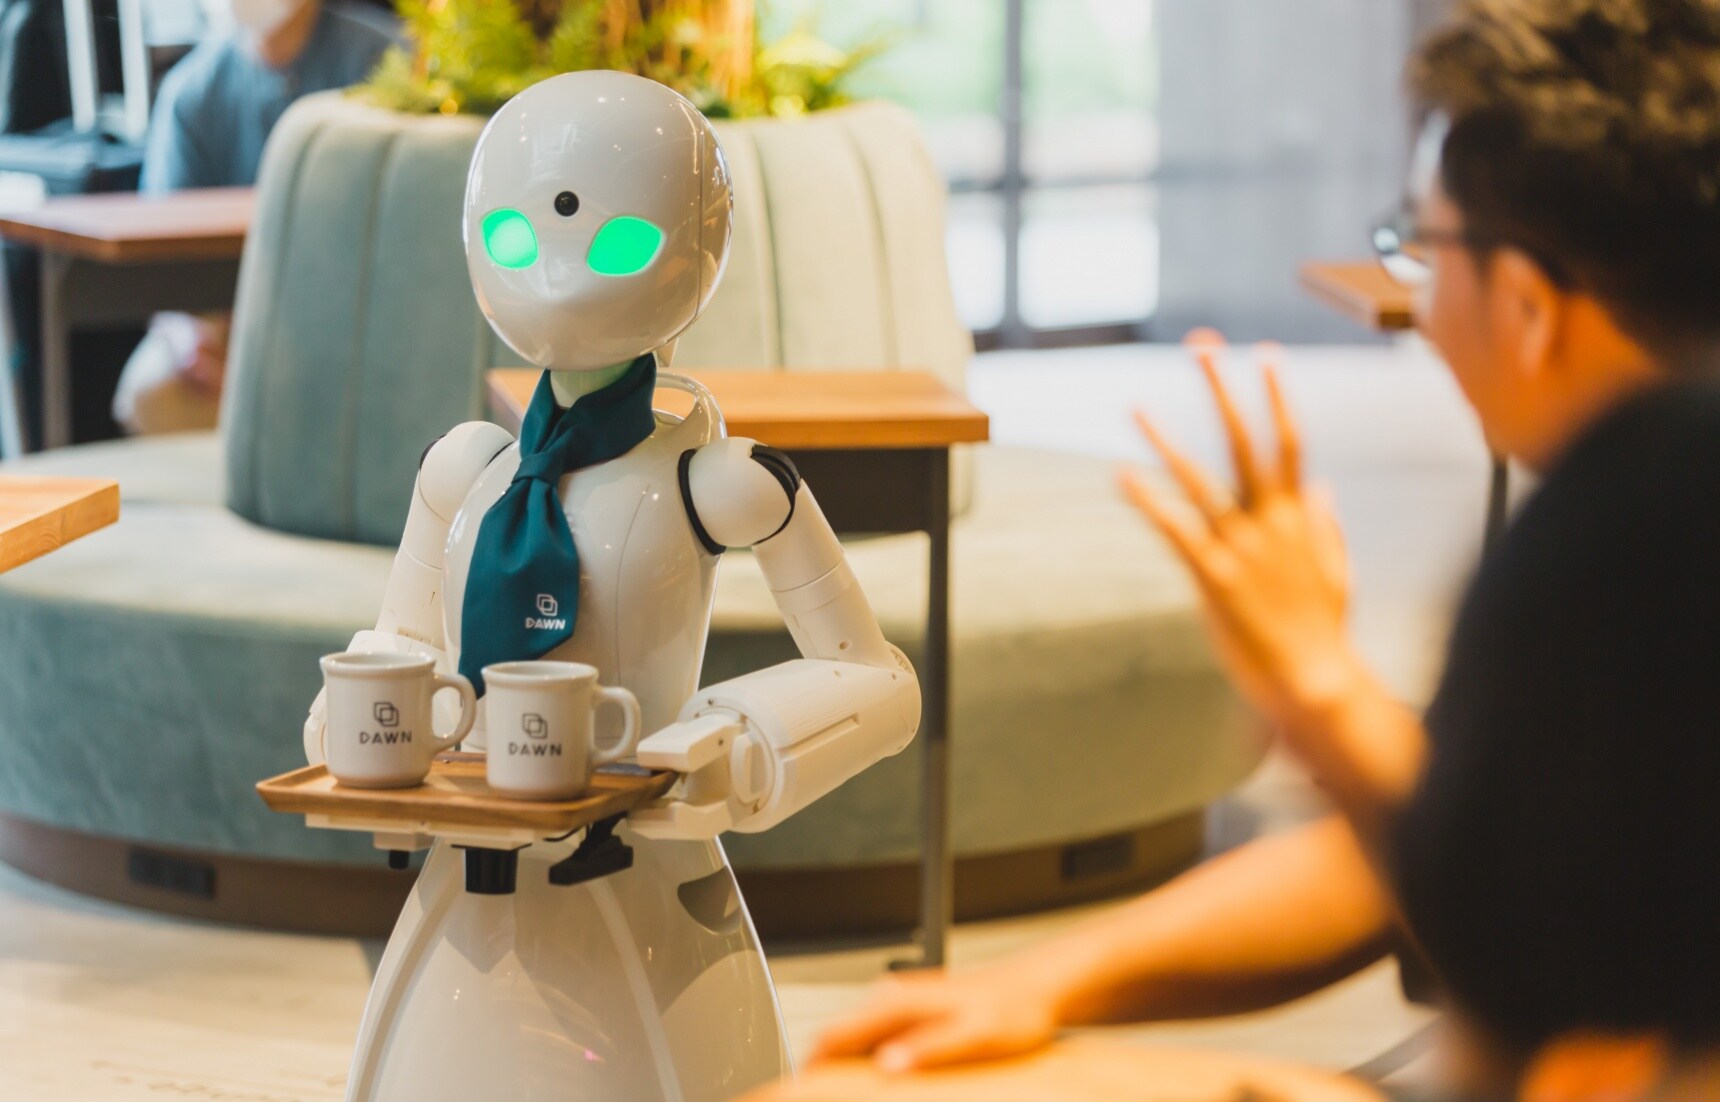 【深度日本】充滿生命力的機器人咖啡廳「分身ロボットカフェDAWN ver.β」